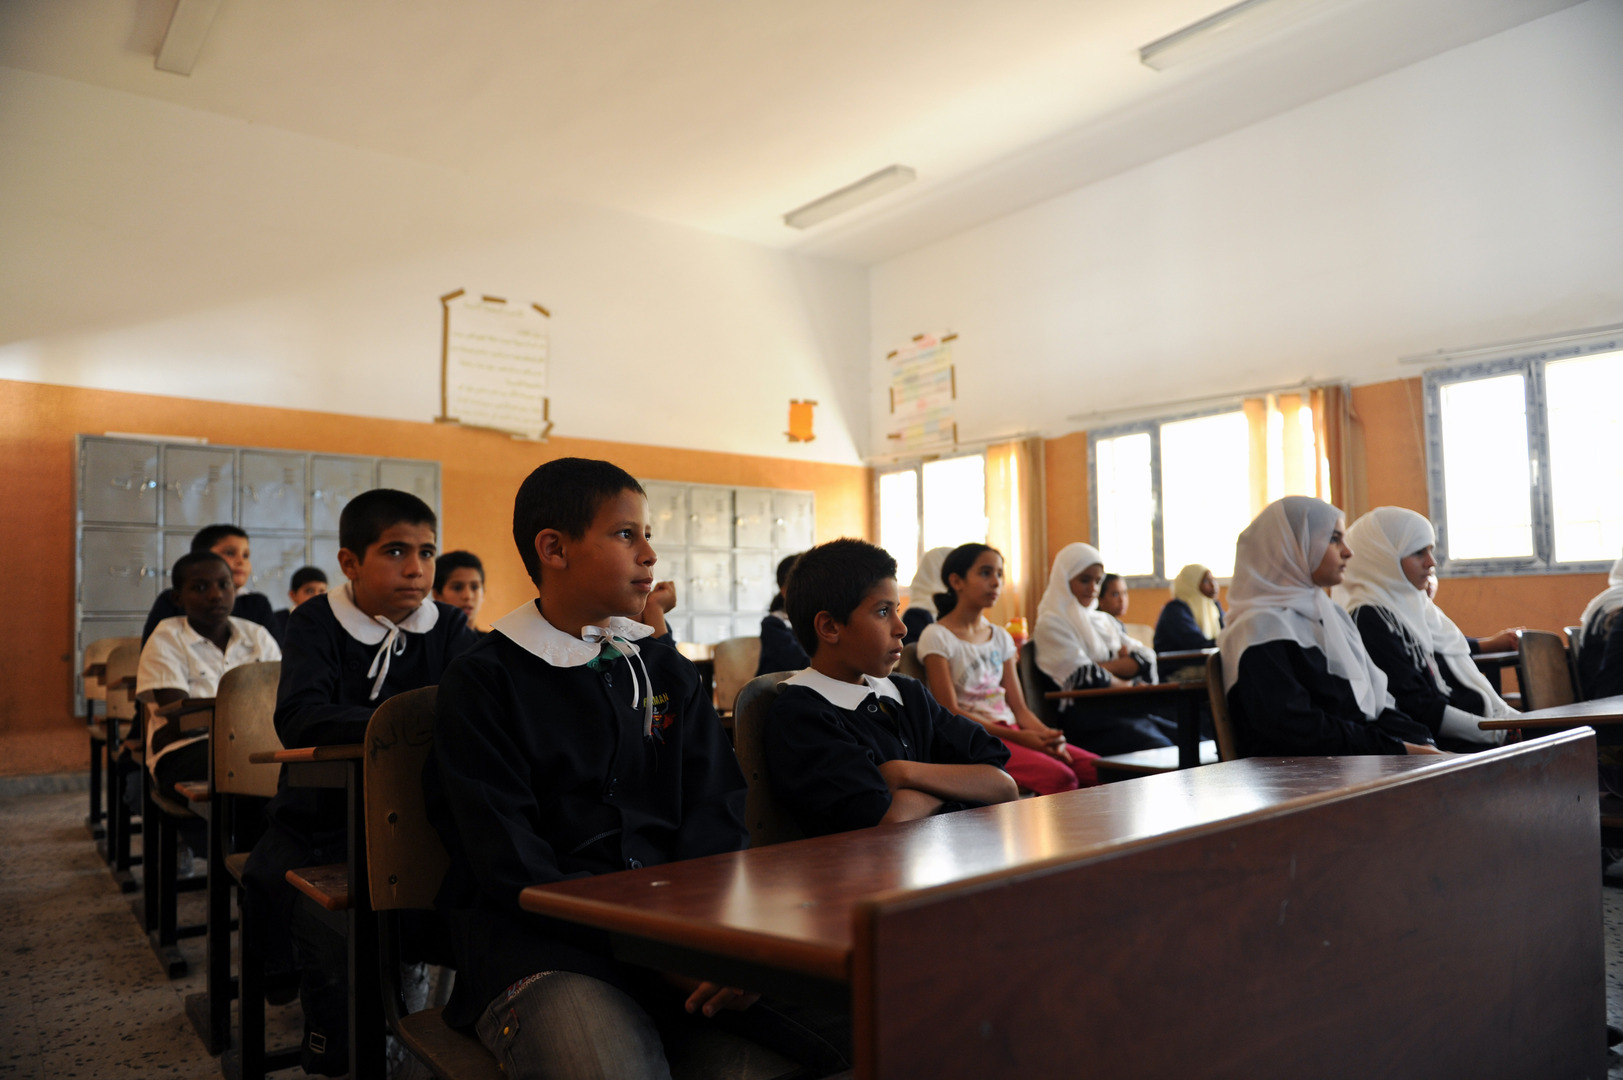 اللغة الأمازيغية تعود إلى مدارس ليبيا